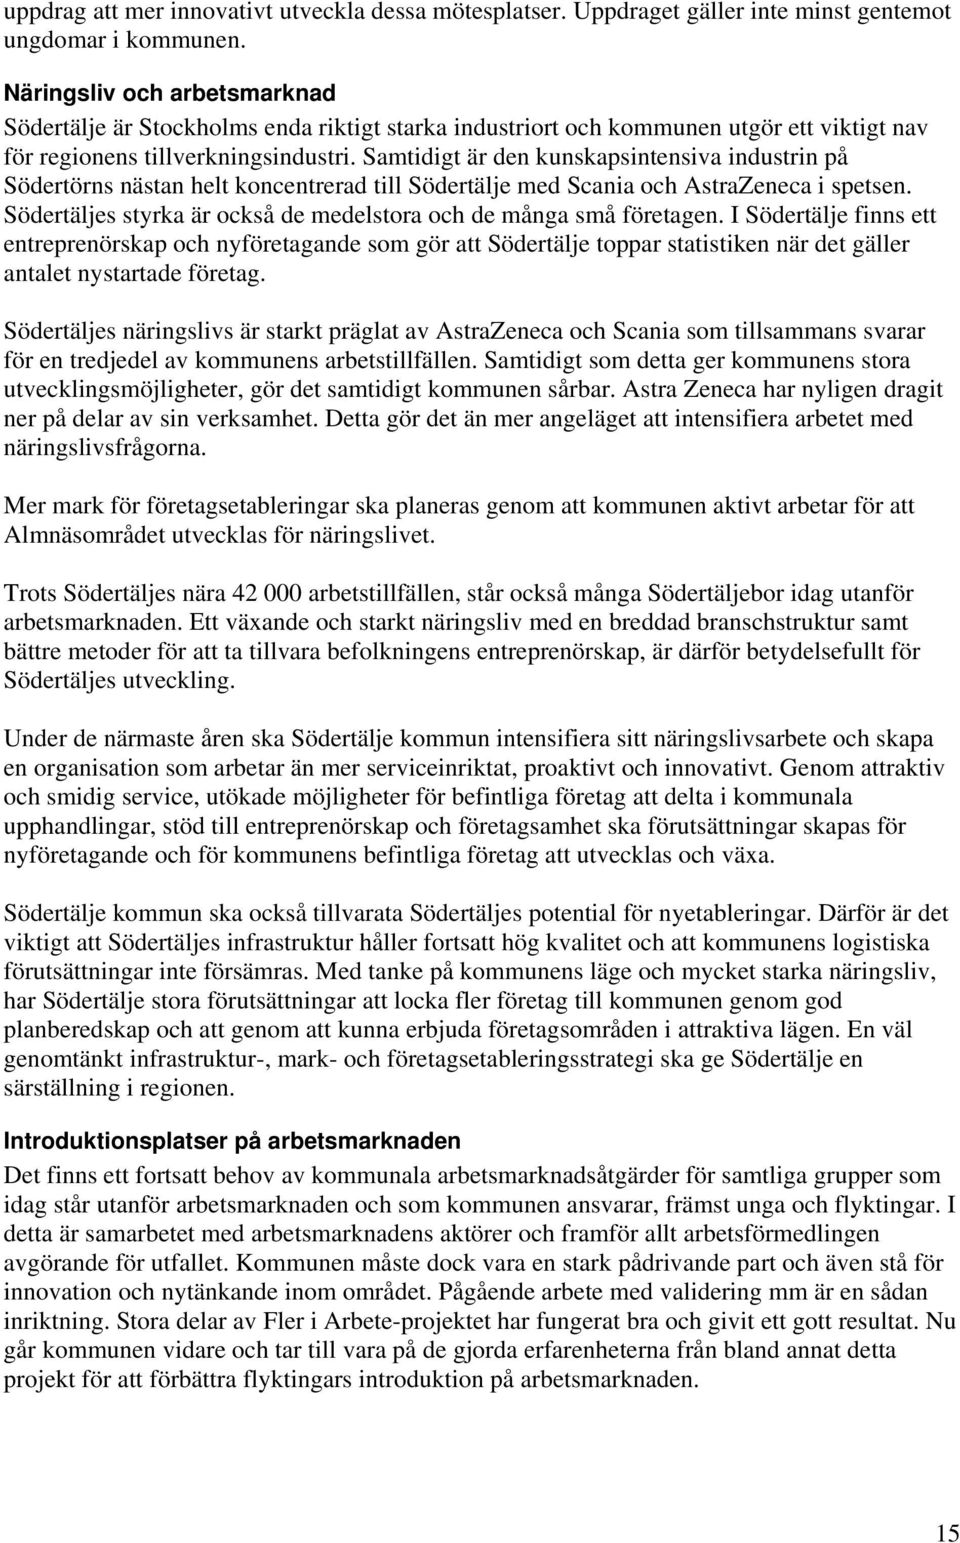 Samtidigt är den kunskapsintensiva industrin på Södertörns nästan helt koncentrerad till Södertälje med Scania och AstraZeneca i spetsen.